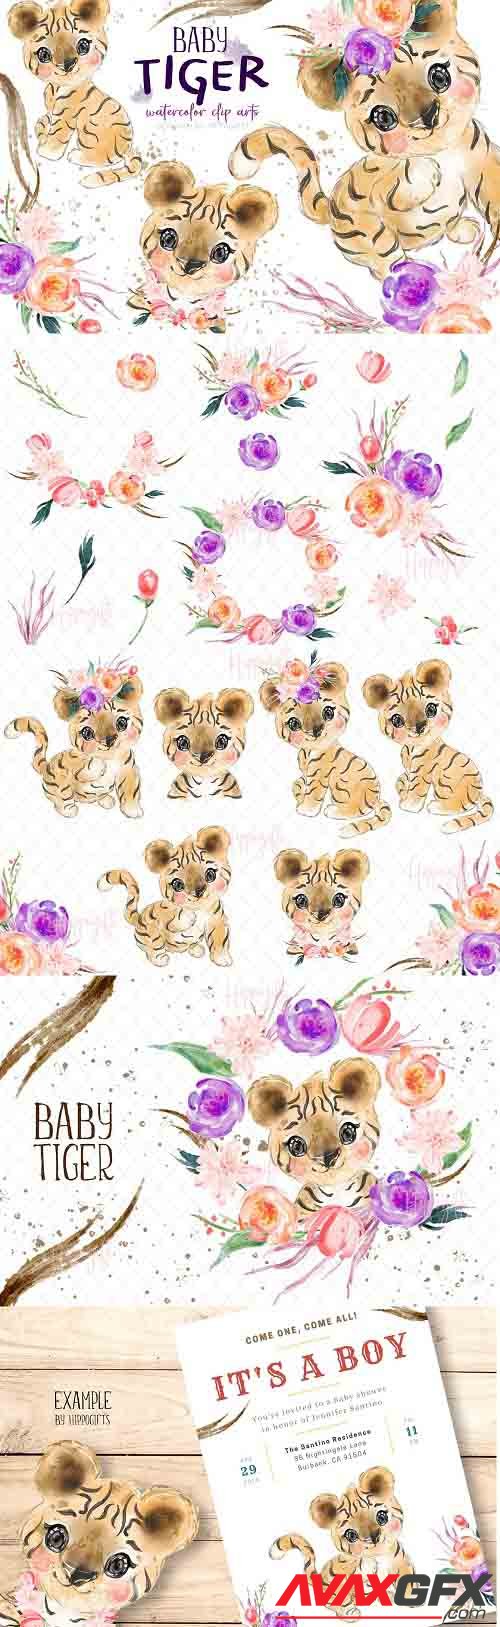 Baby tiger watercolor clip art - 6114179